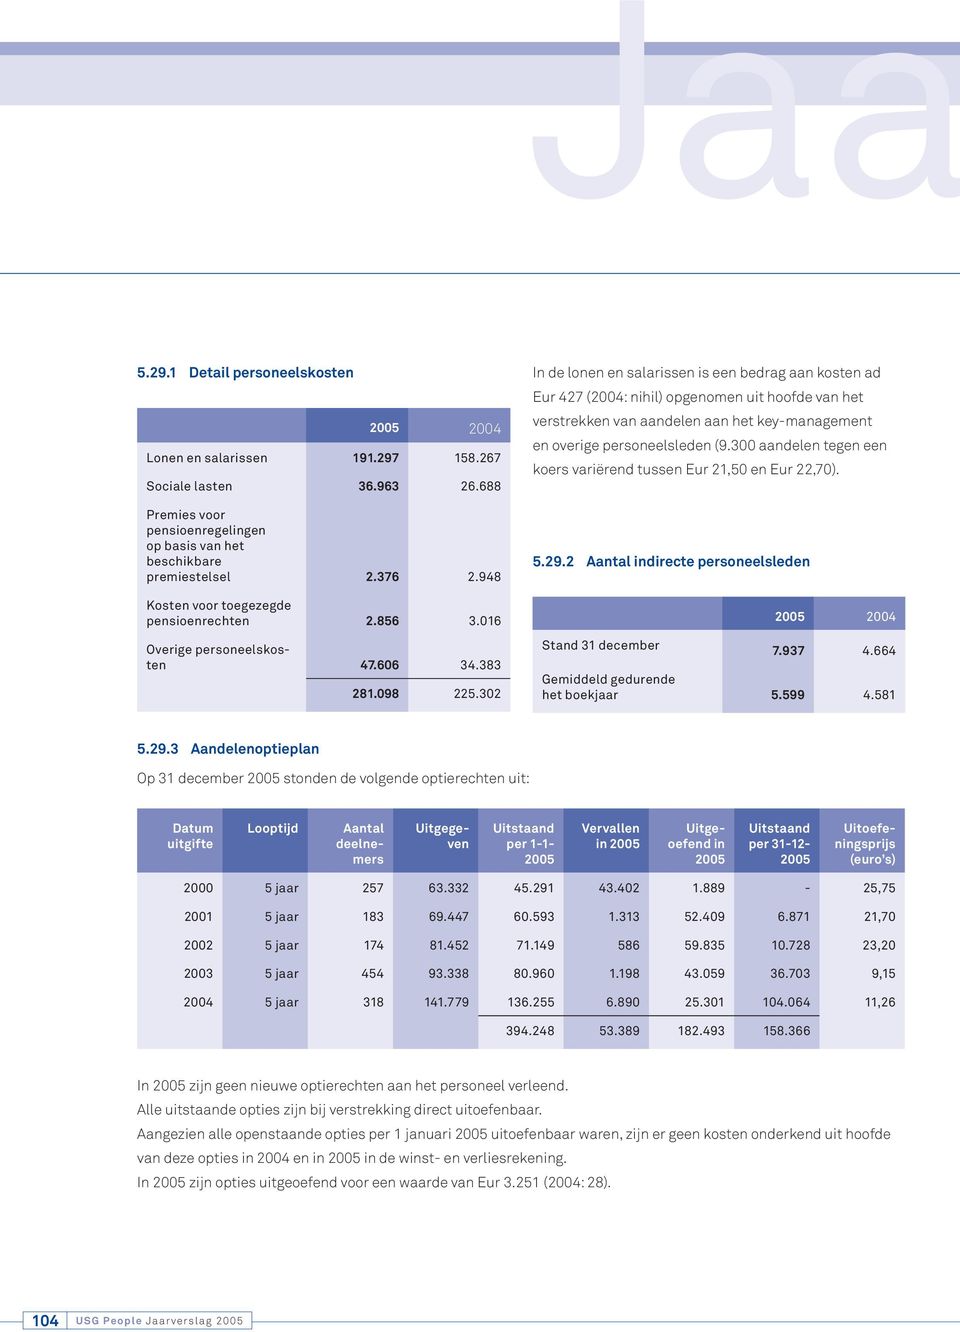 302 In de lonen en salarissen is een bedrag aan kosten ad Eur 427 (2004: nihil) opgenomen uit hoofde van het verstrekken van aandelen aan het key-management en overige personeelsleden (9.